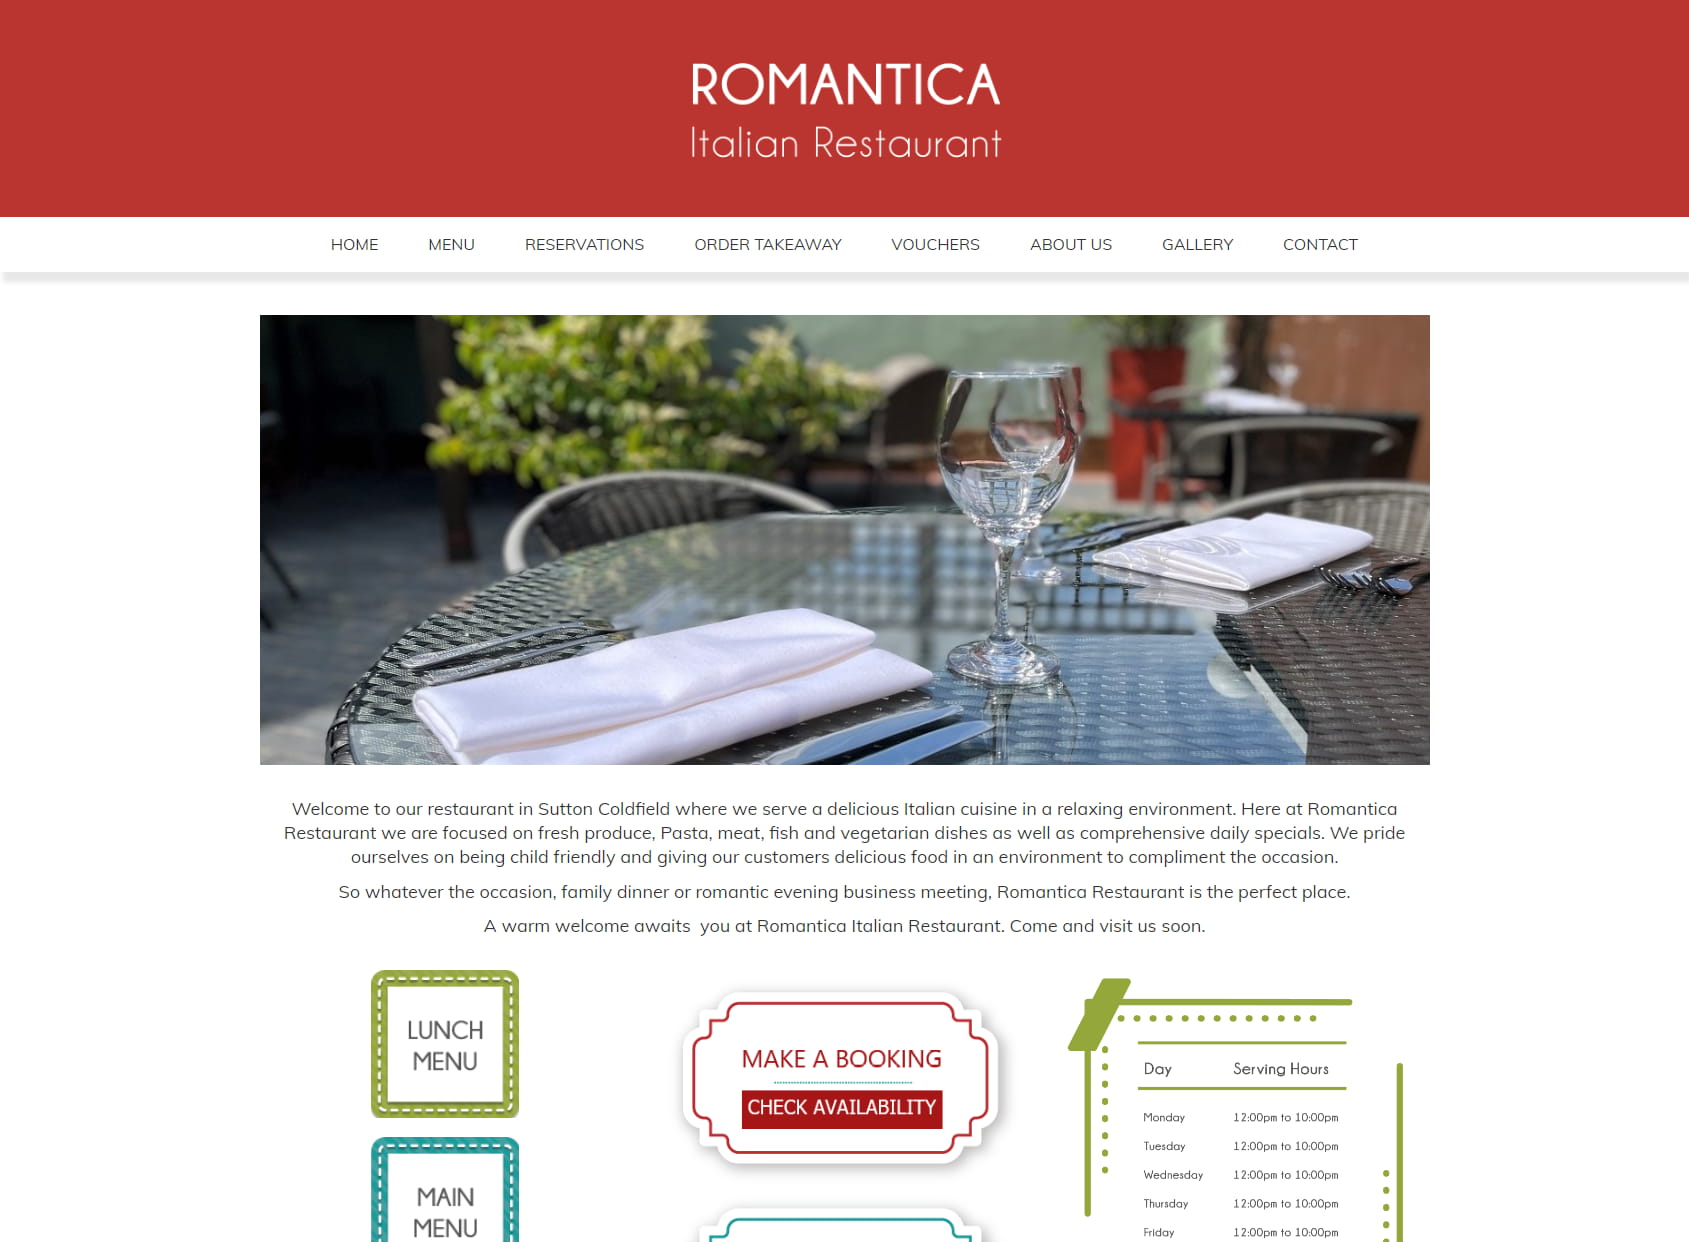 Romantica Italian Restaurant